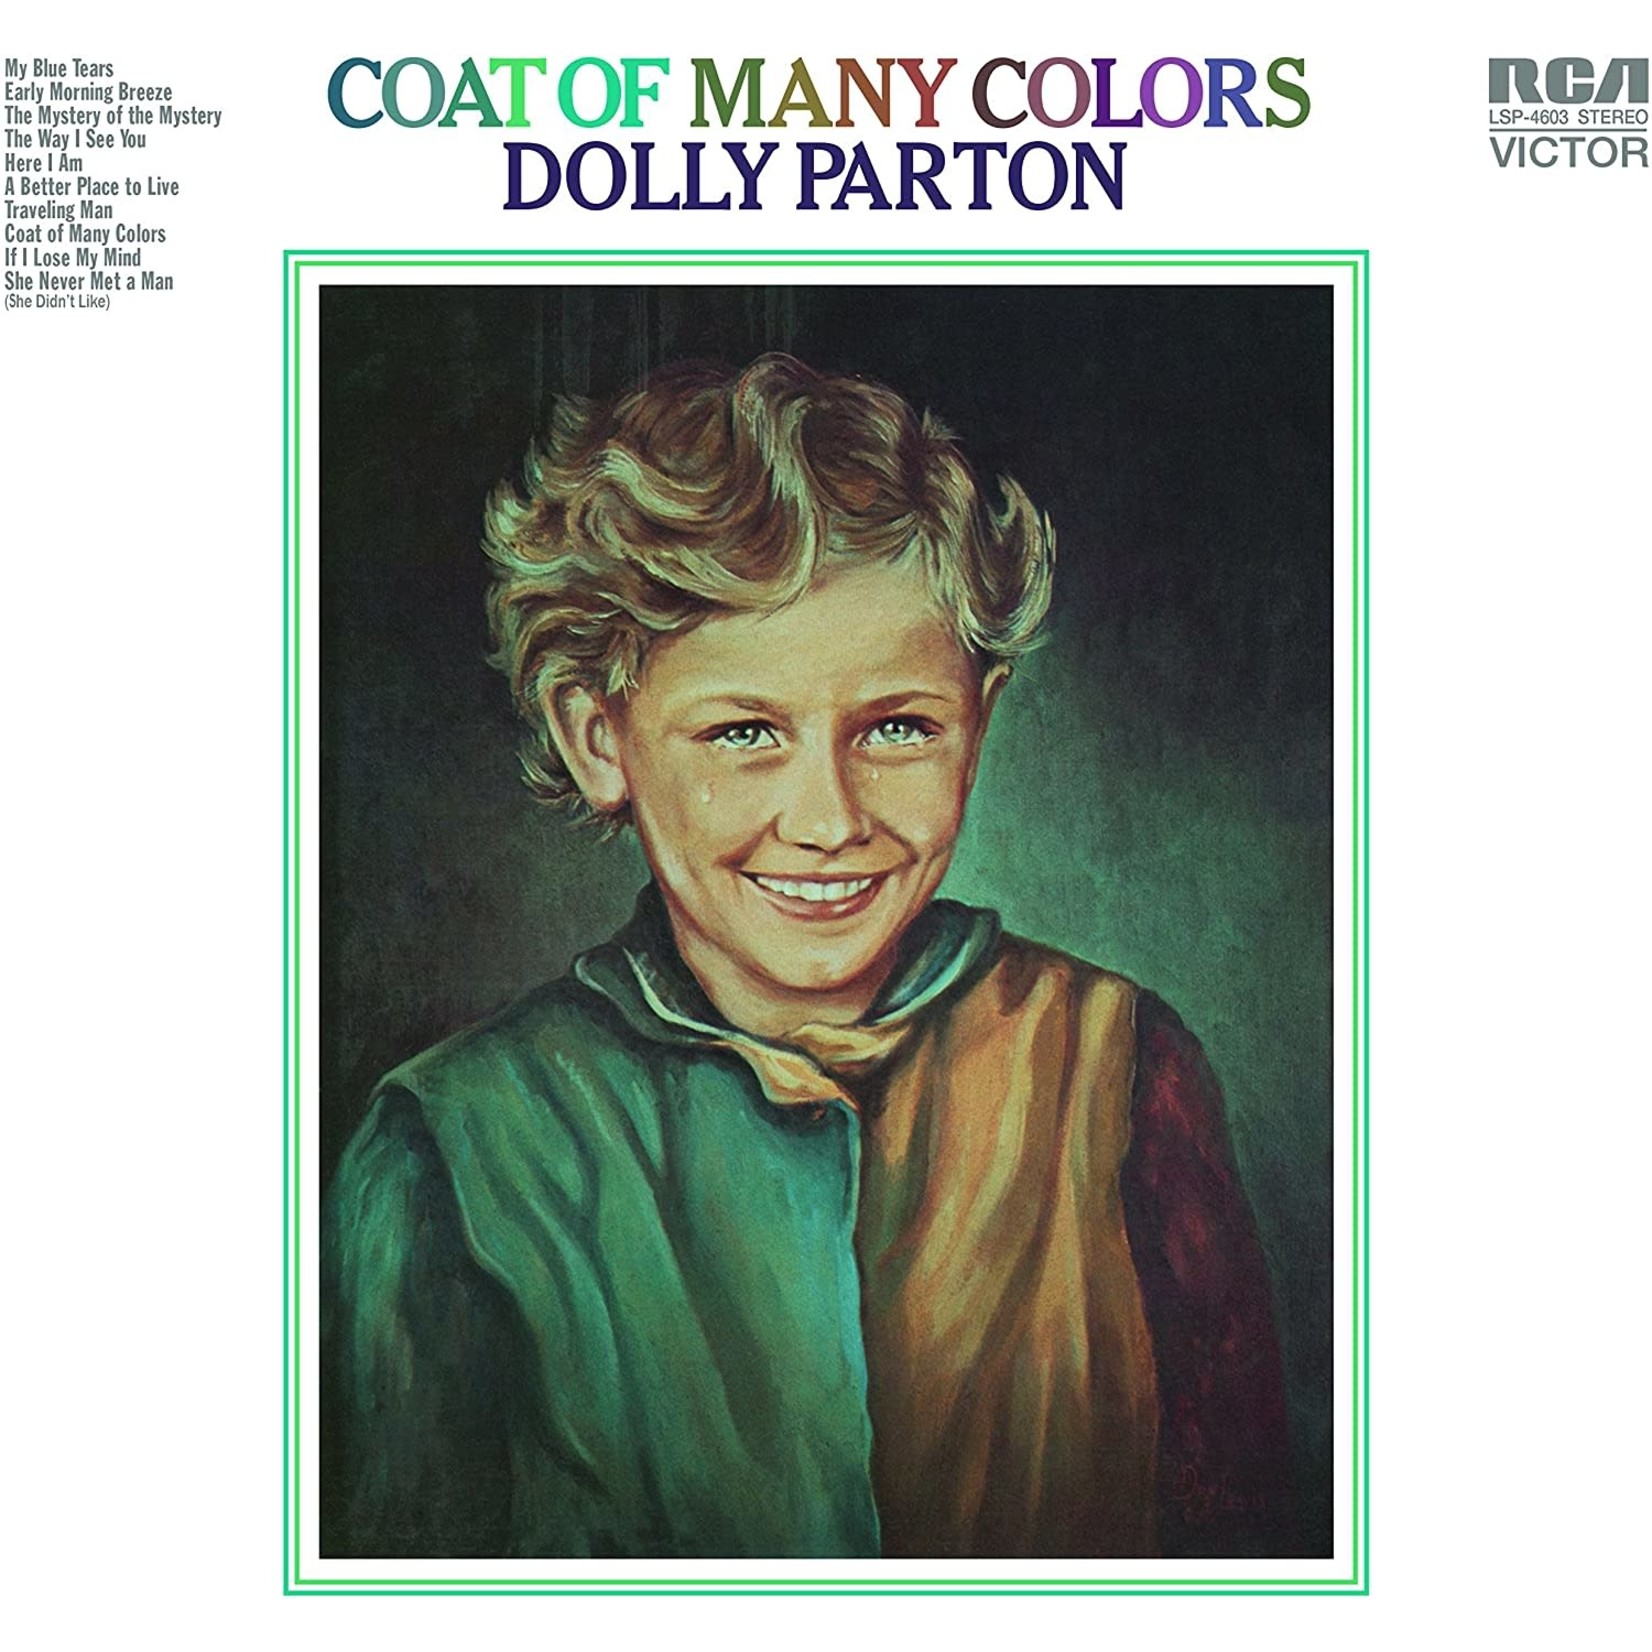 [New] Dolly Parton - Coat of Many Colors